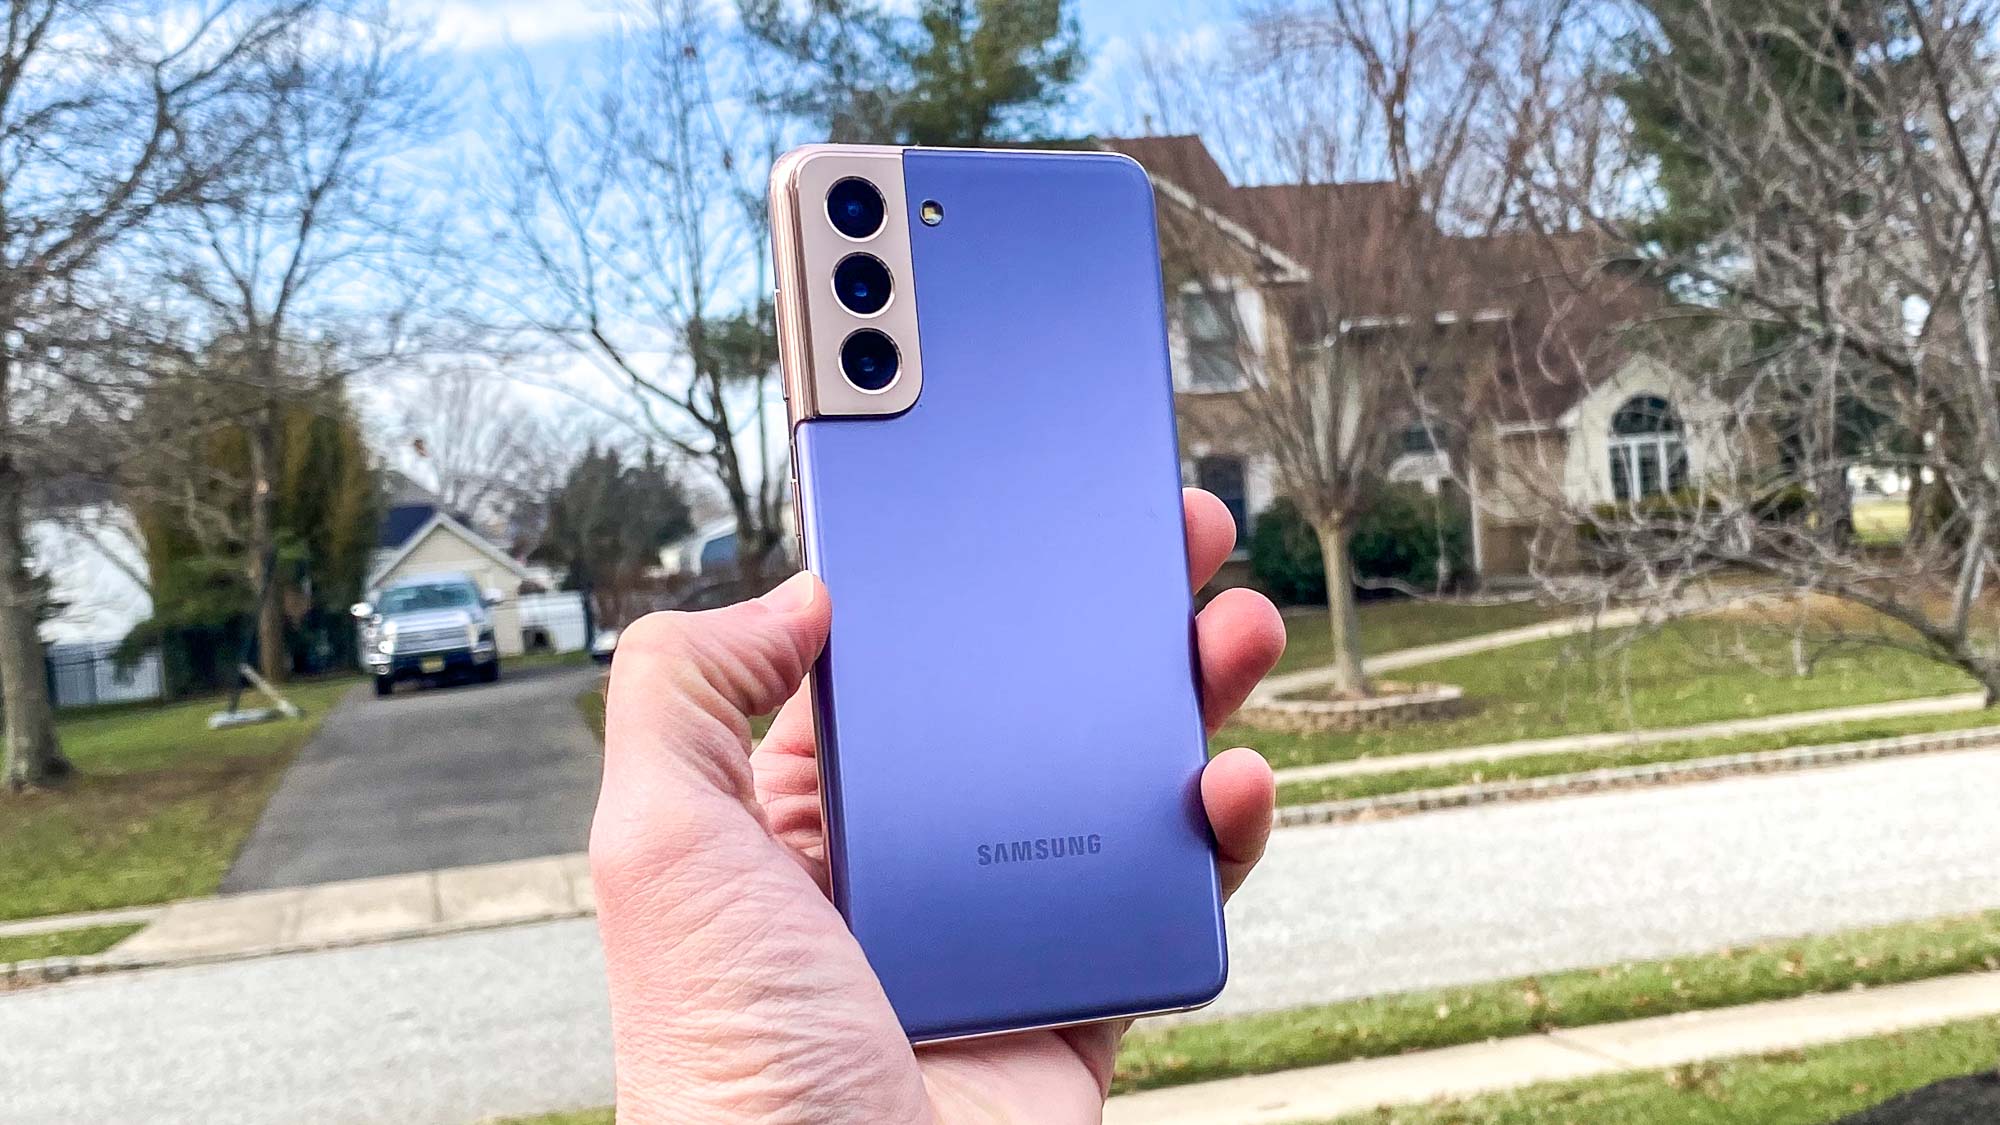 Bạn đang sở hữu Samsung Galaxy S21? Bạn muốn tận dụng tối đa tính năng của chiếc điện thoại này? Hãy khám phá các mẹo hữu ích dành cho Galaxy S21 để sử dụng thật thông minh và tiện dụng hơn nhé!